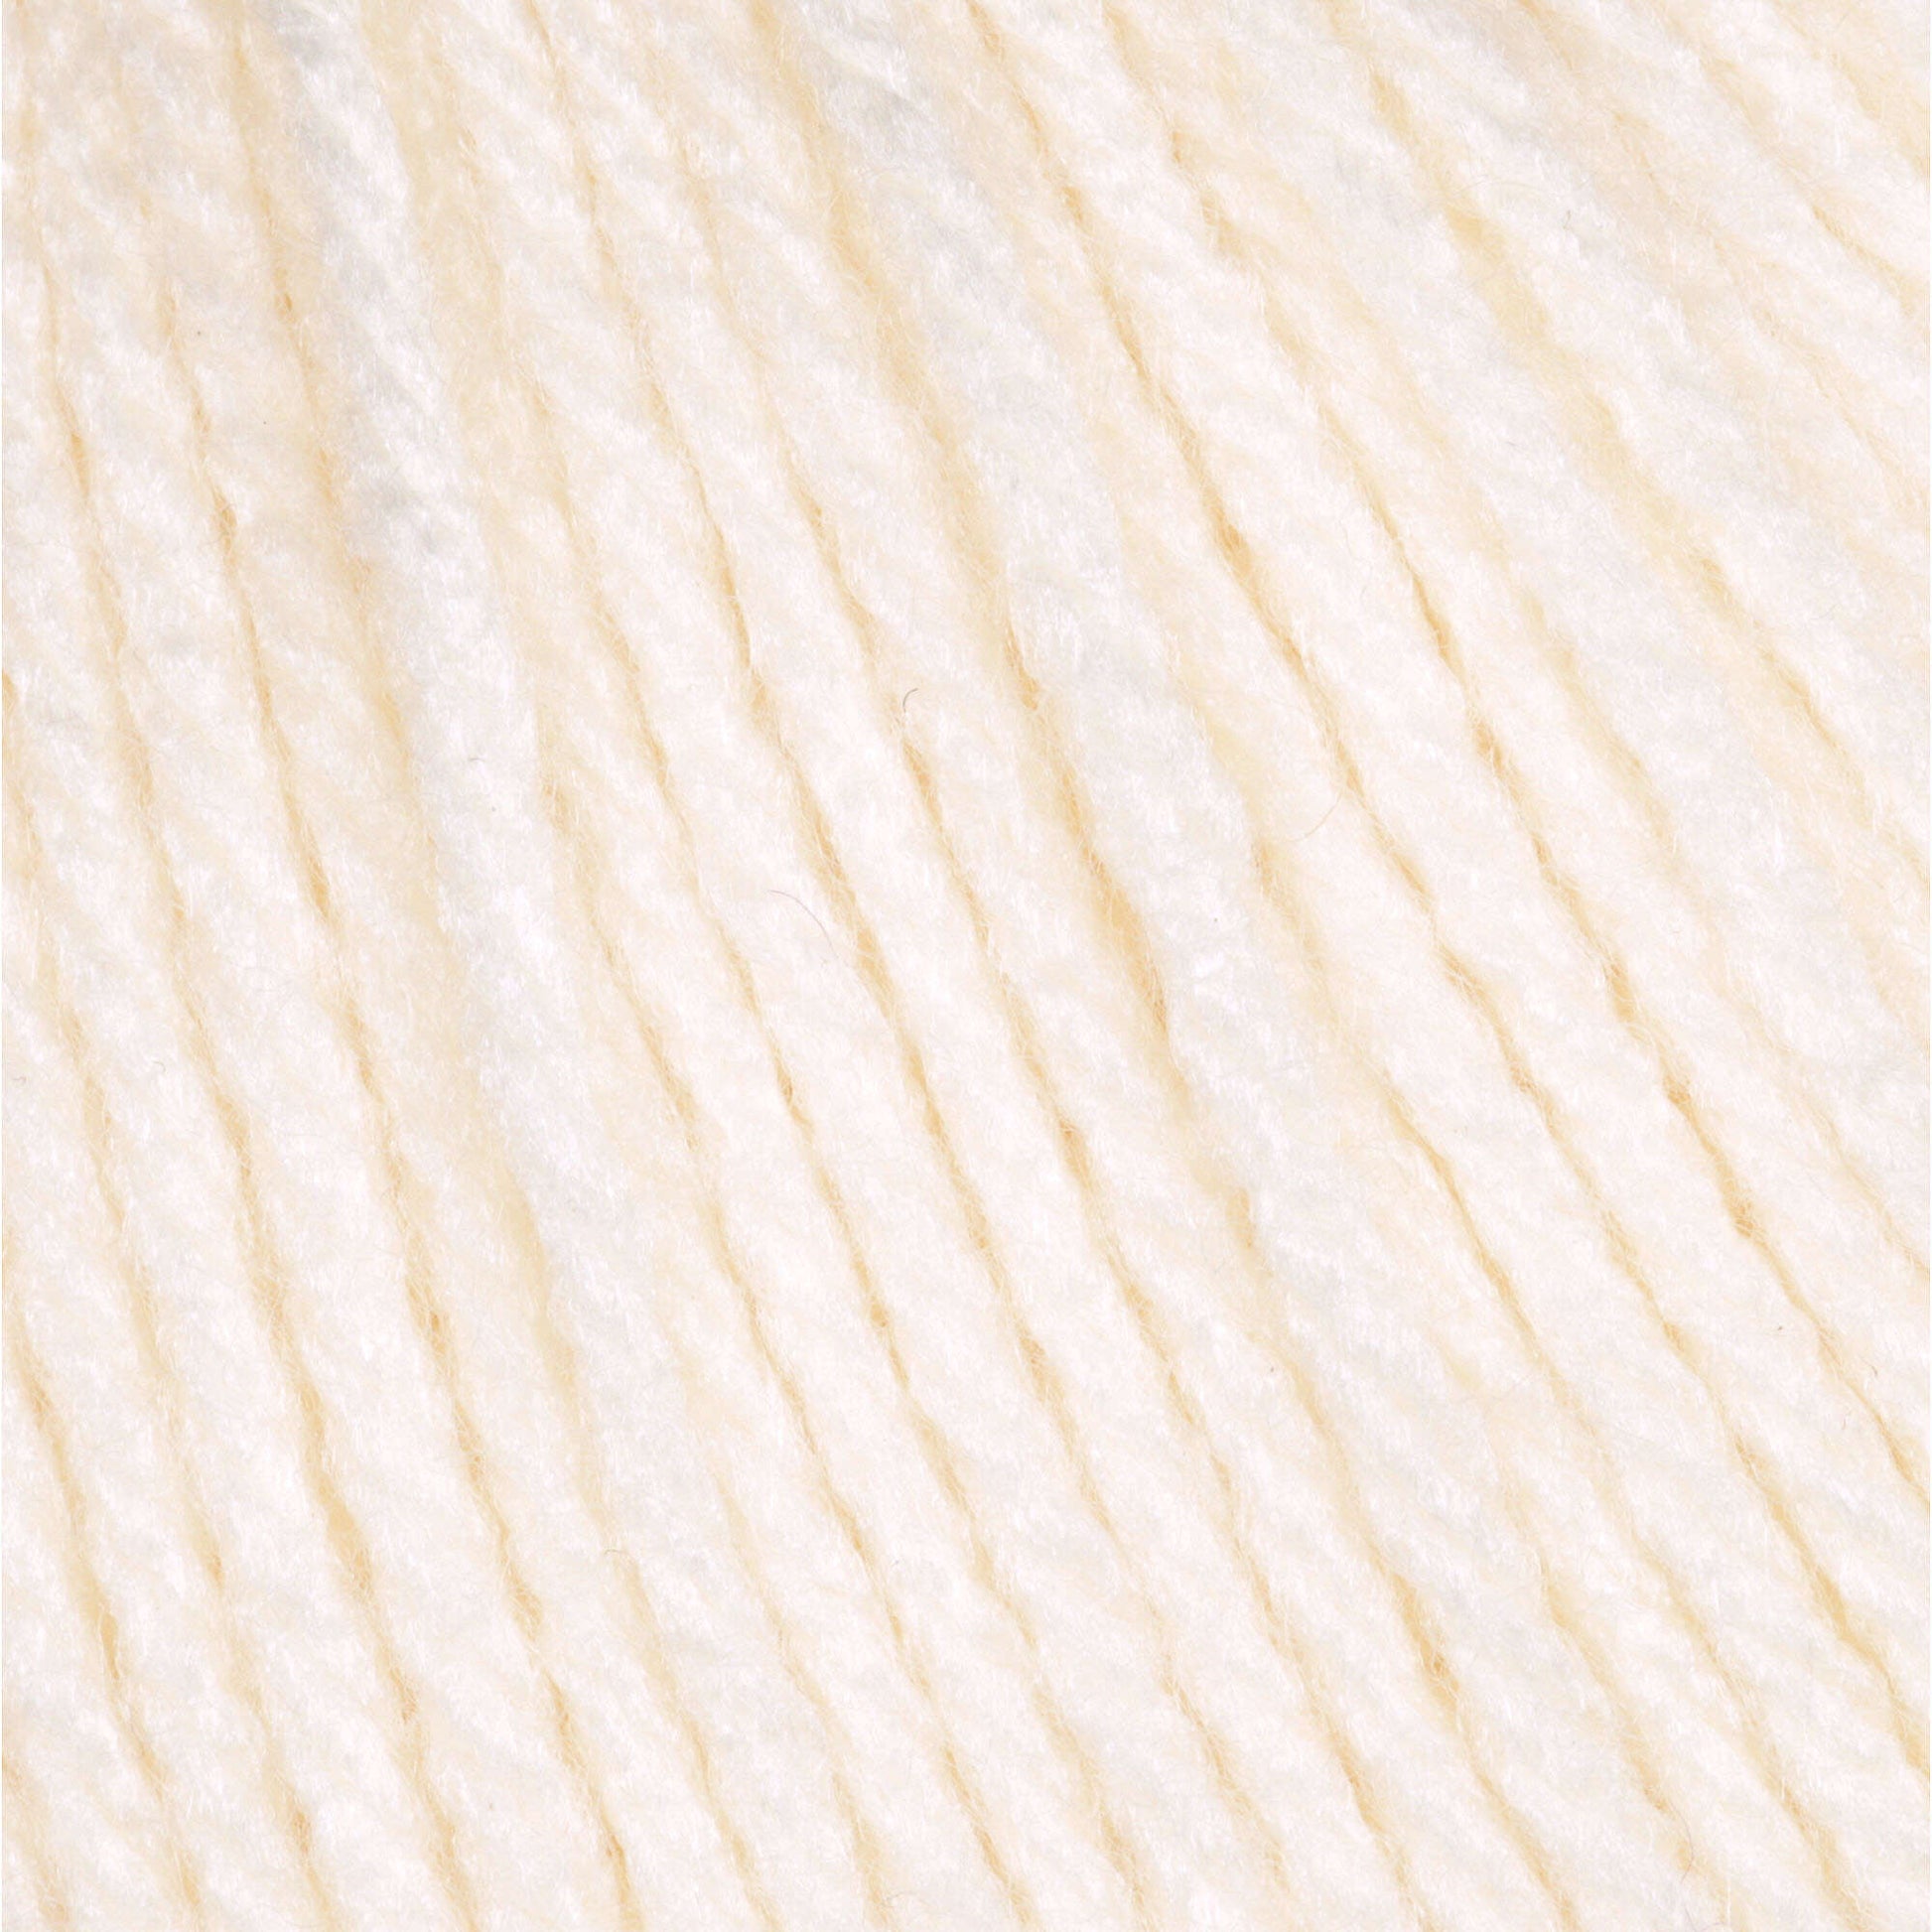 Phentex Worsted Yarn - Clearance shades Natural